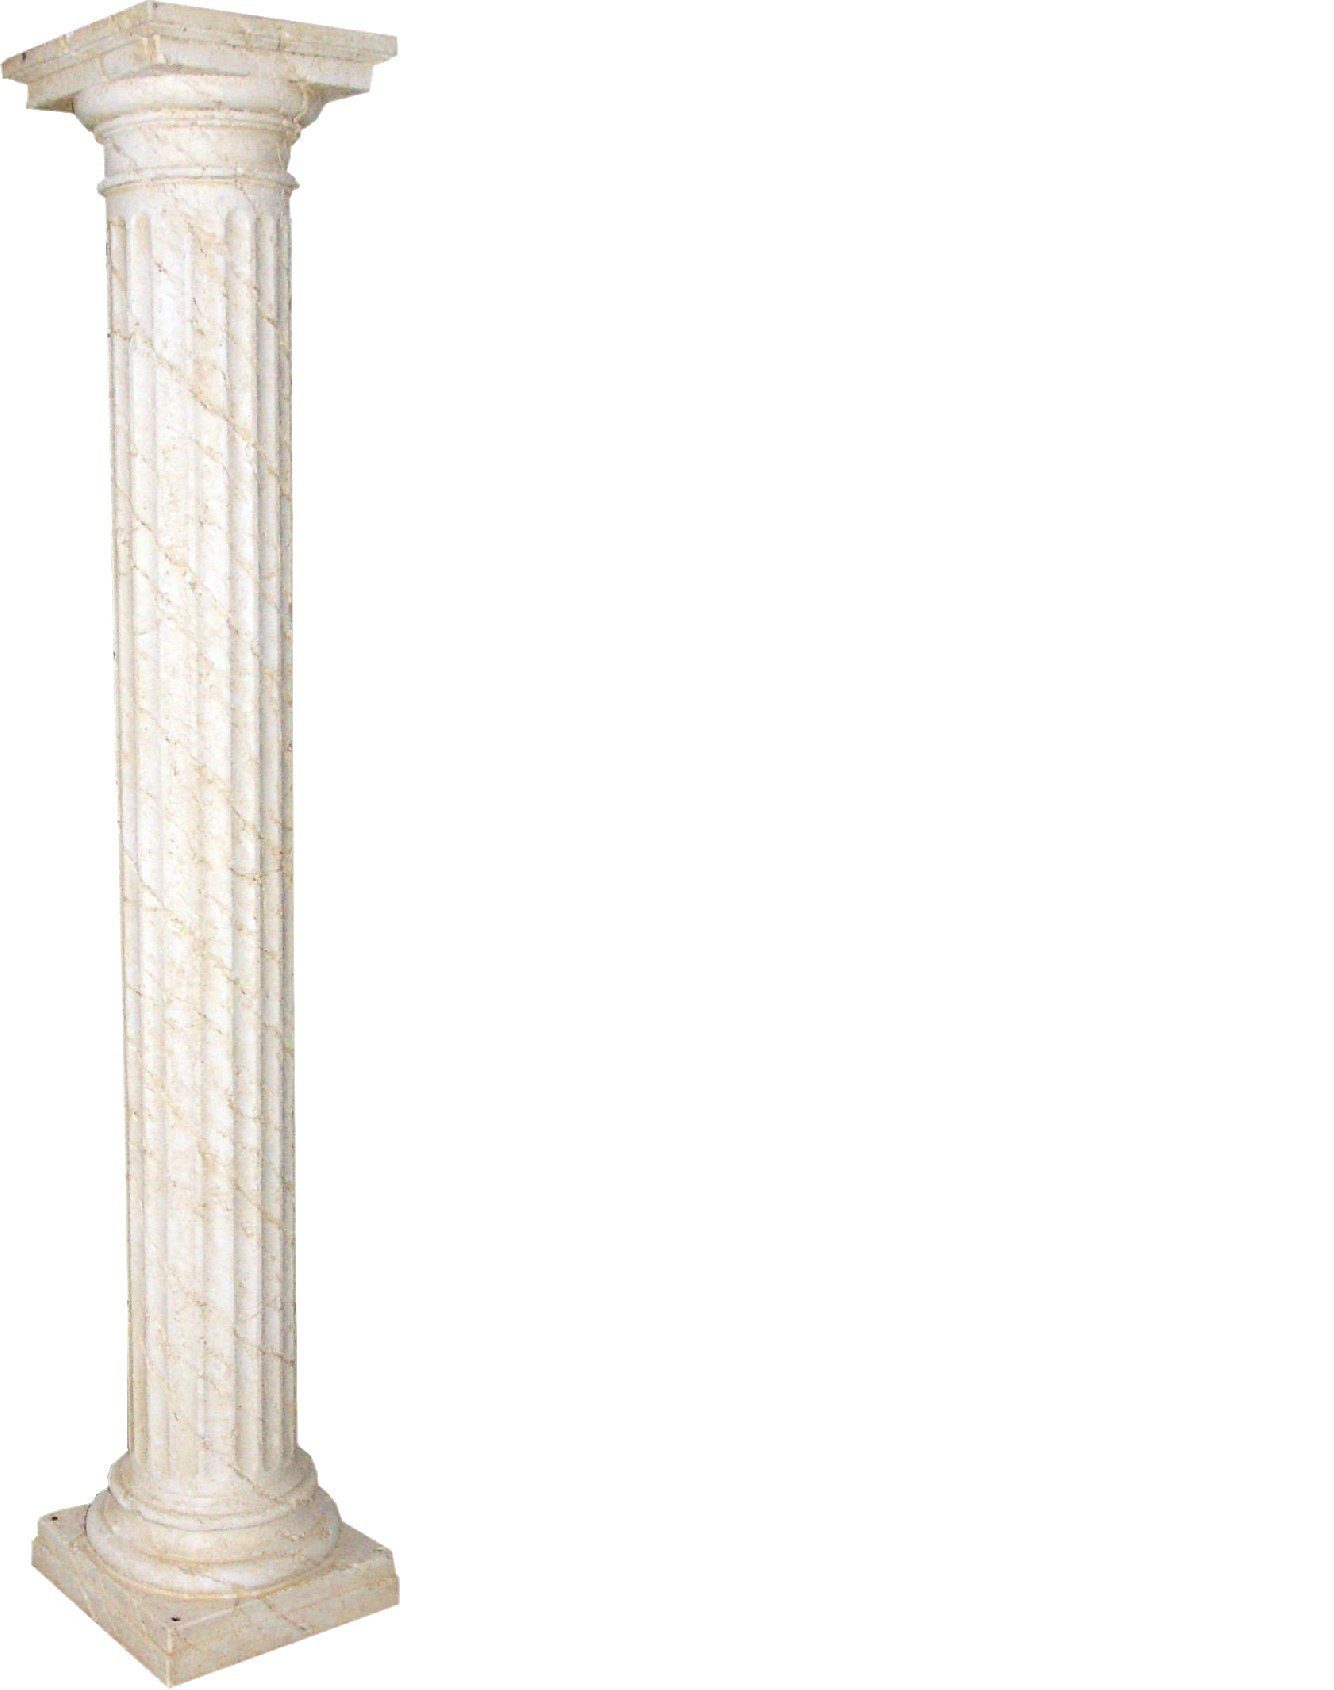 JVmoebel Skulptur XXL Säule 214cm Groß Design Luxus Neu Stil Säulen Griechische Antik